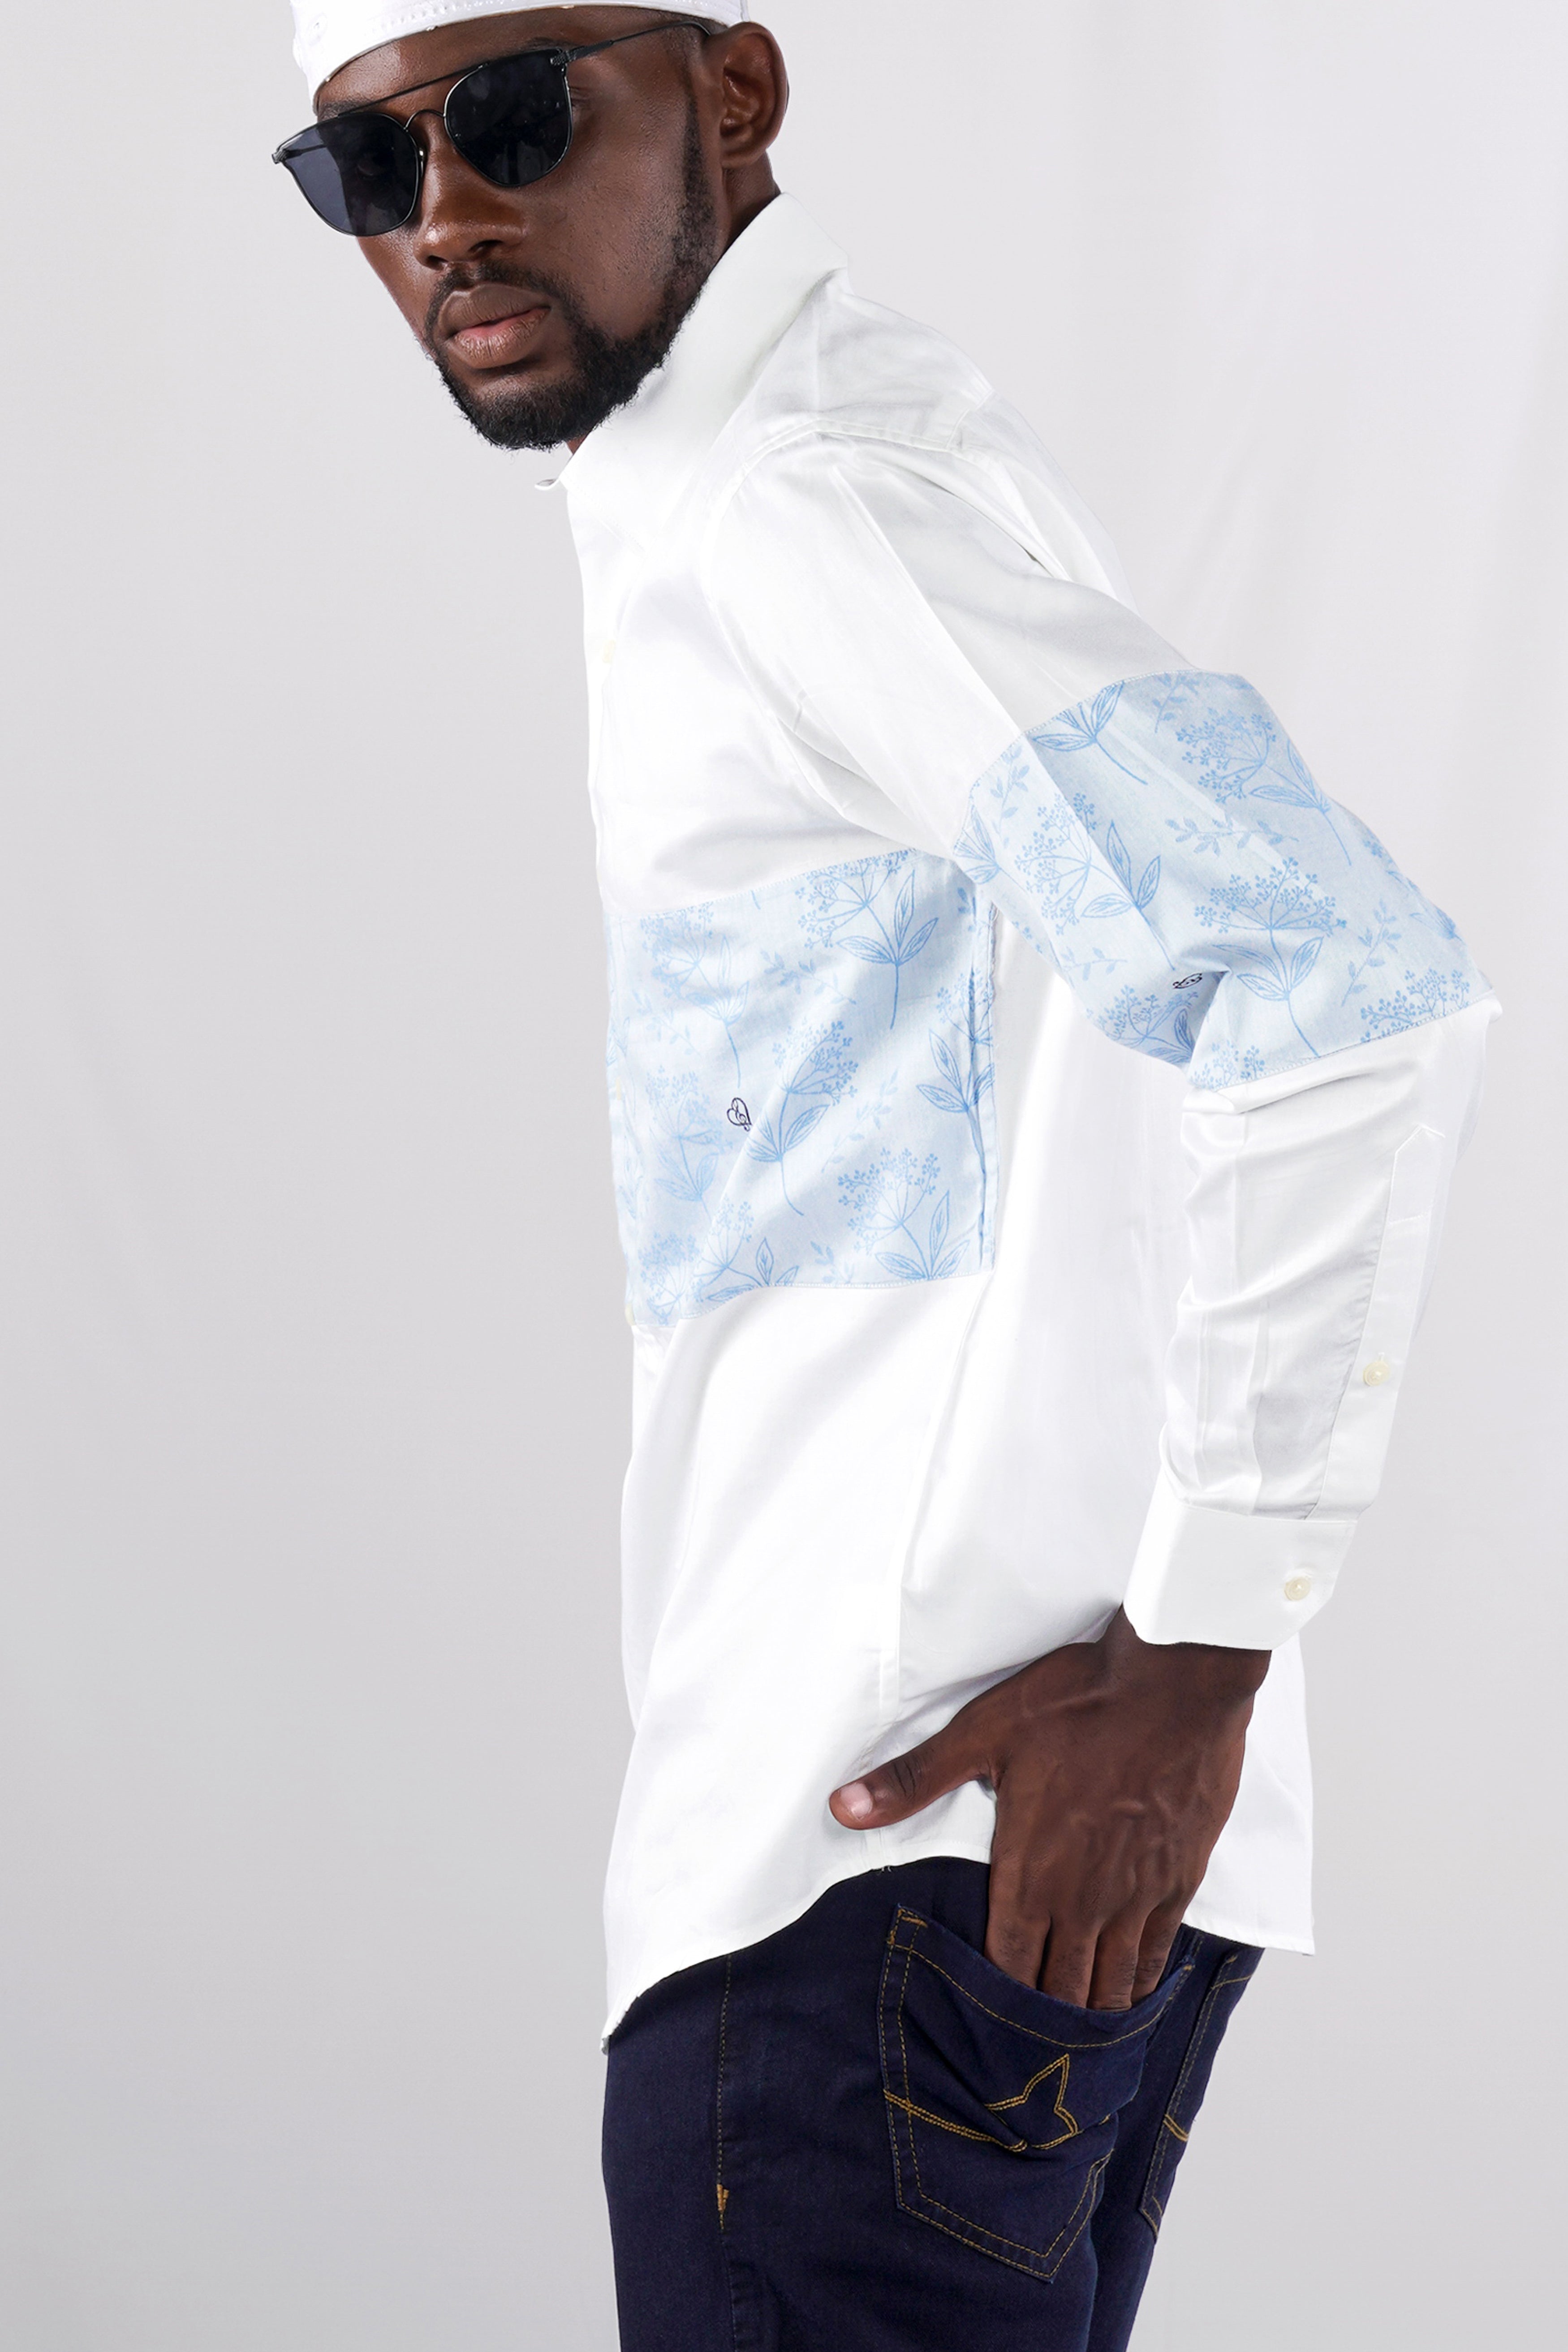 Bright White Jacquard Textured Premium Giza Cotton Designer Shirt